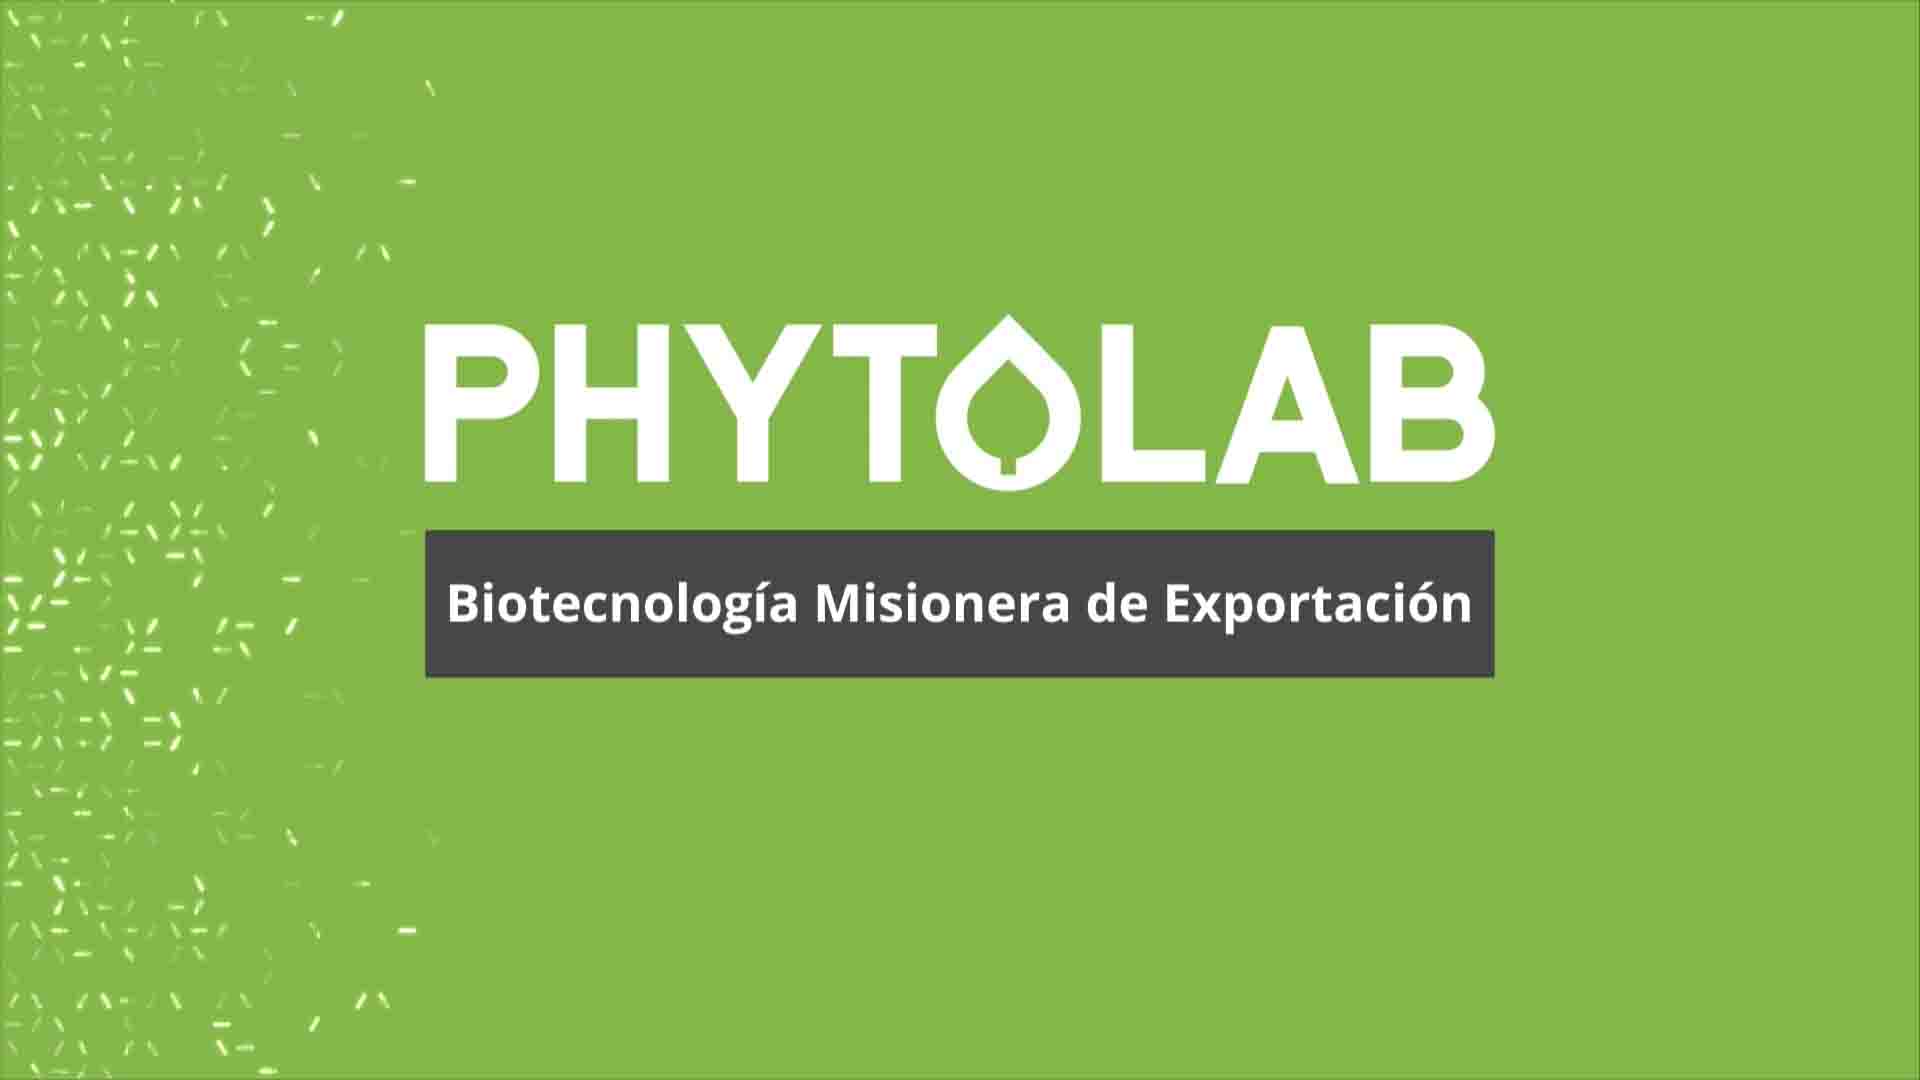 PHYTOLAB: biotecnología de exportación desarrollada en Misiones